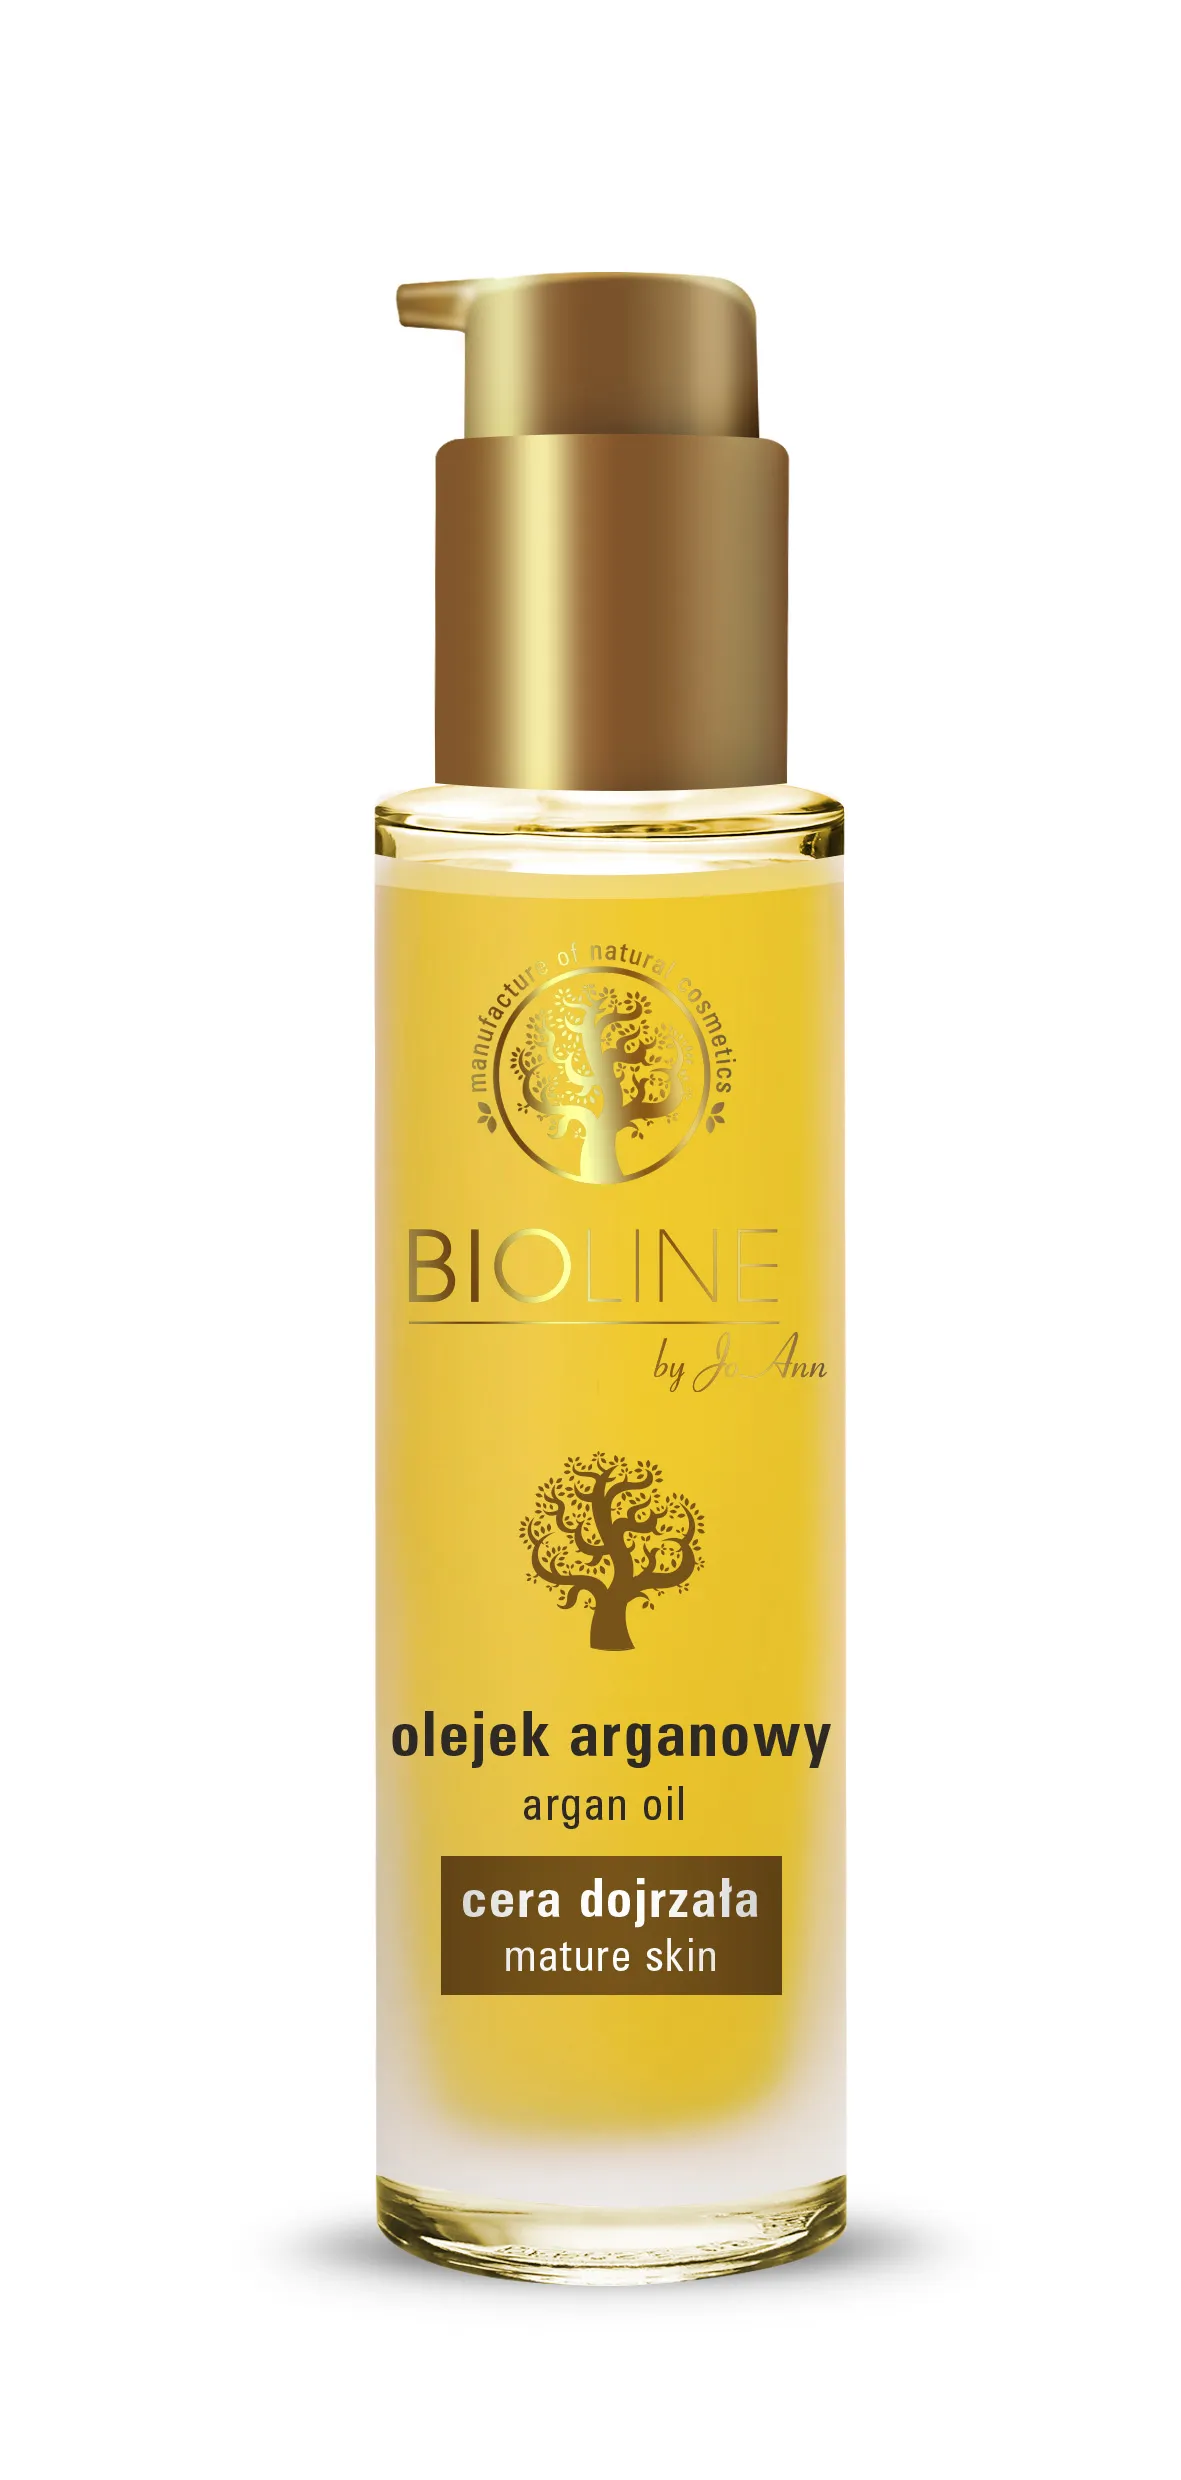 Bioline by JoAnn olejek arganowy, 50 ml